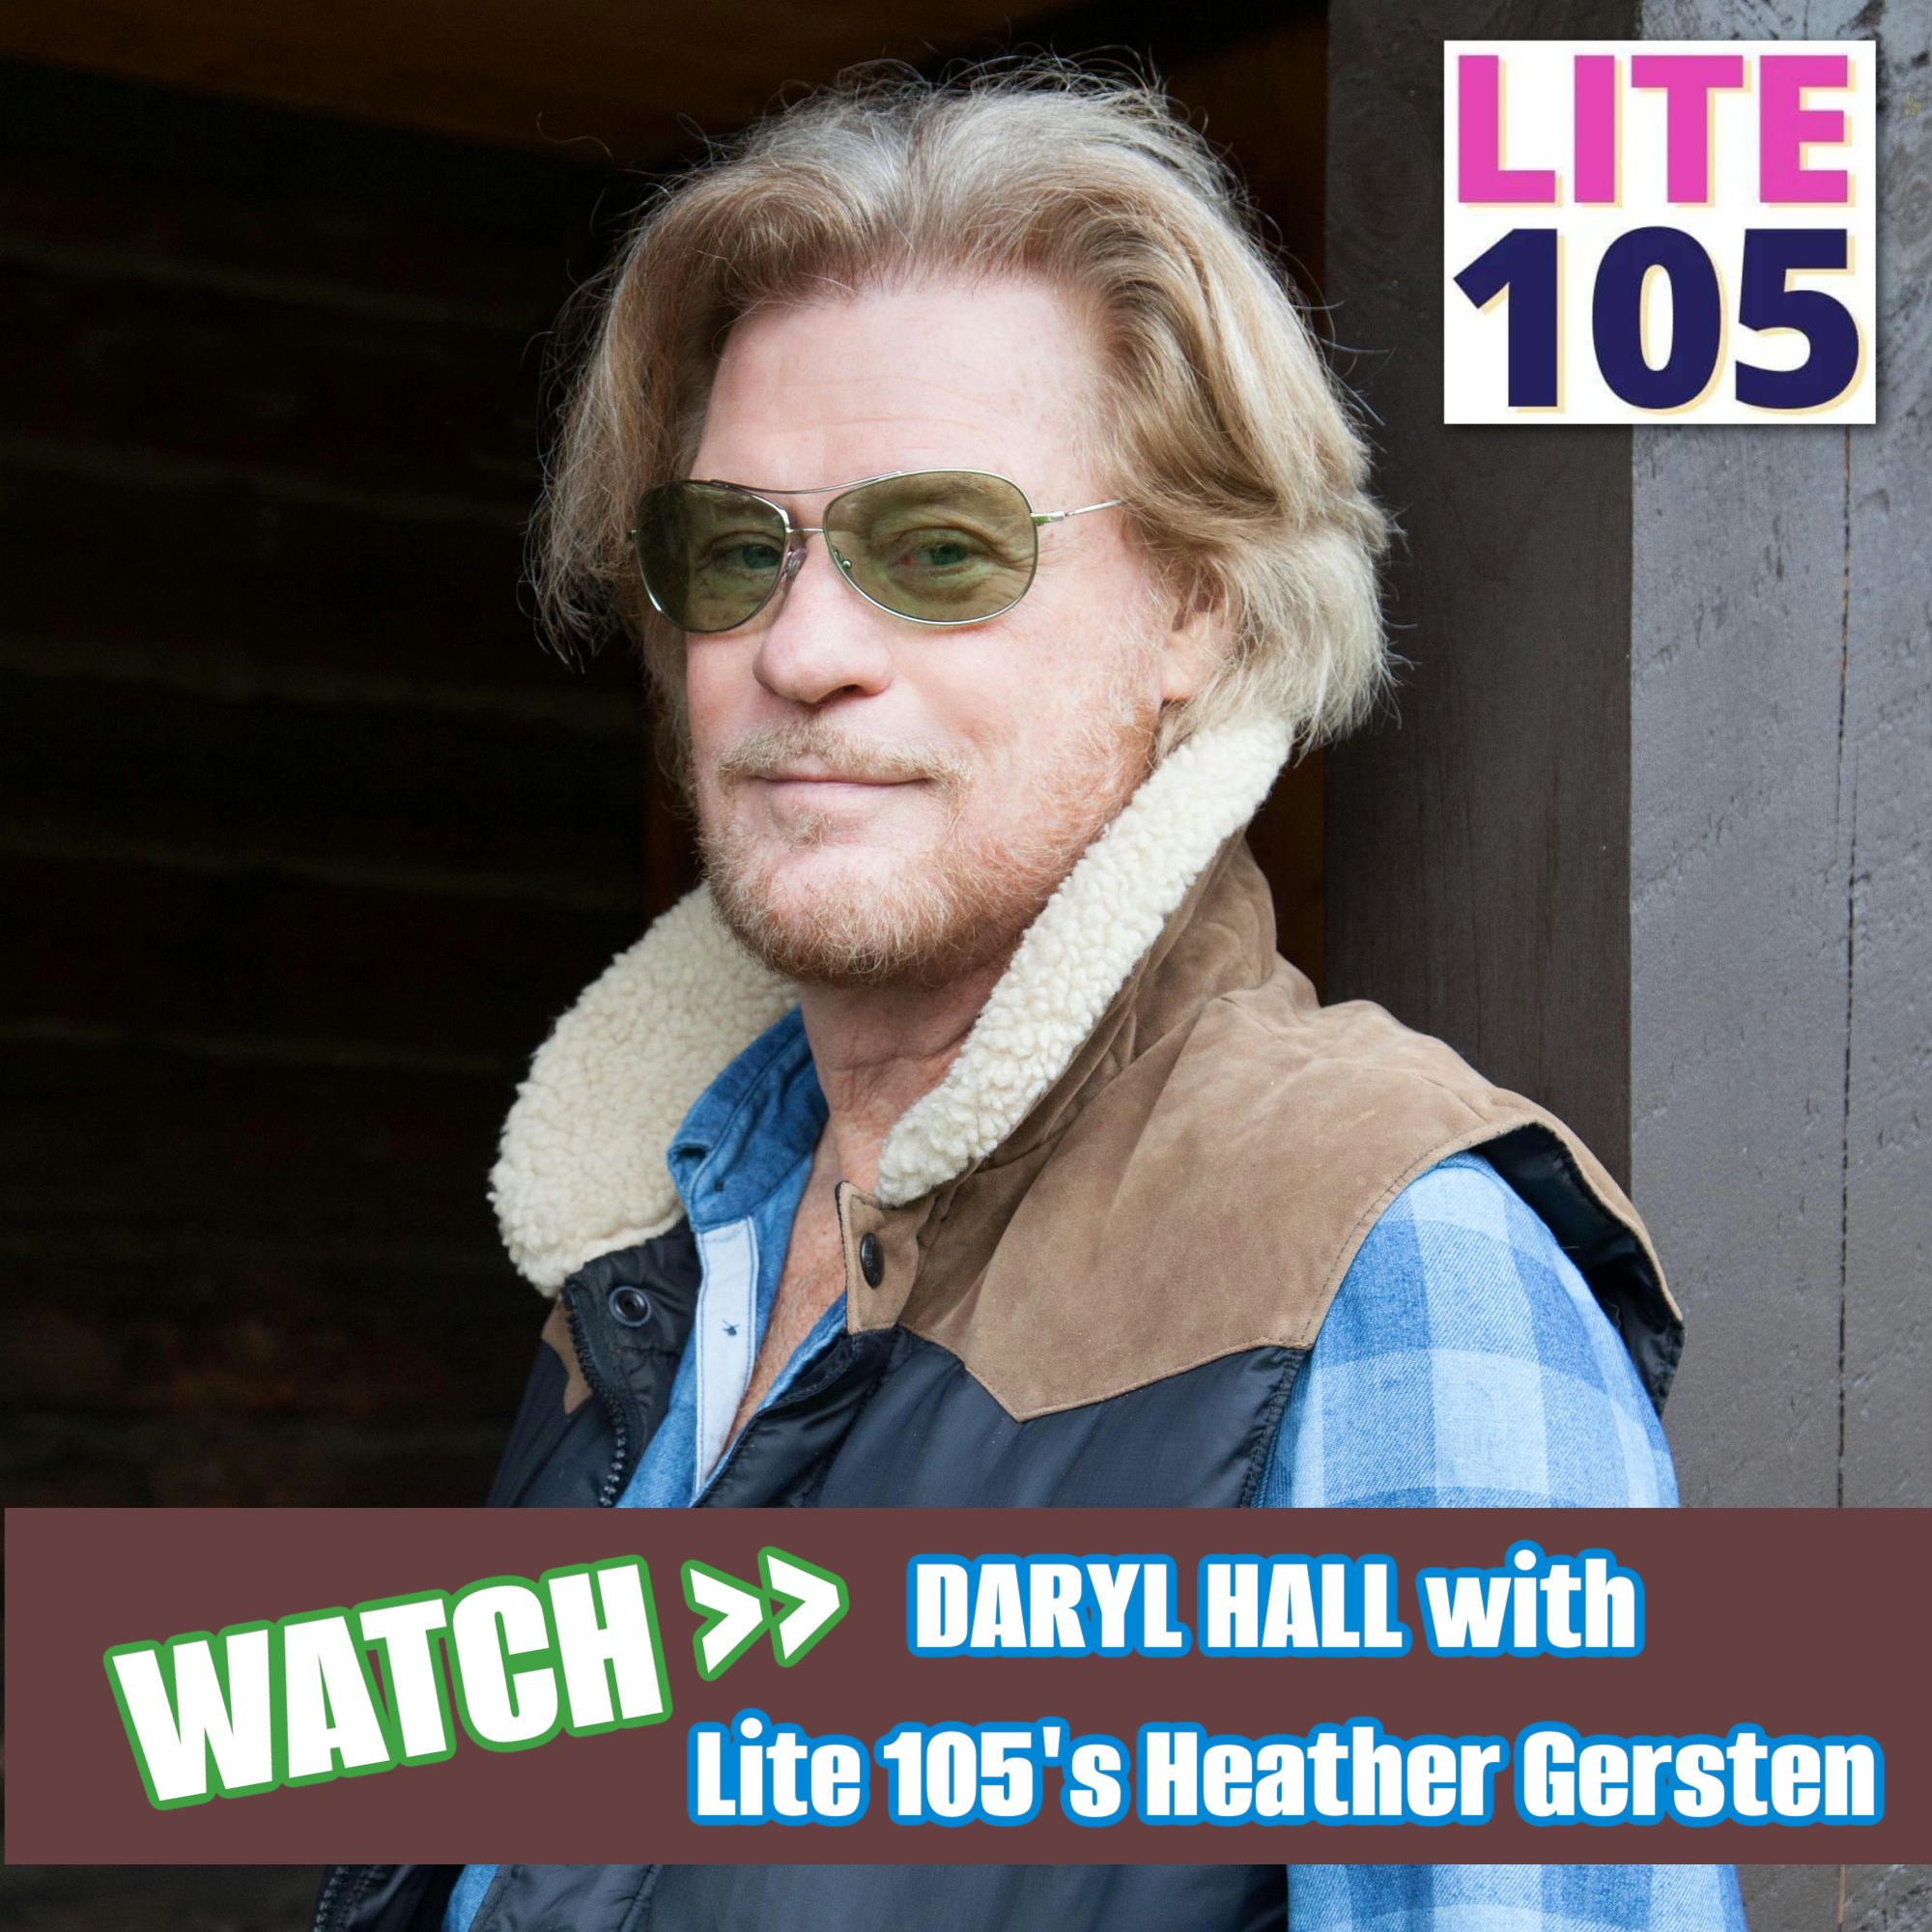 DARYL HALL with Lite 105’s Heather Gersten